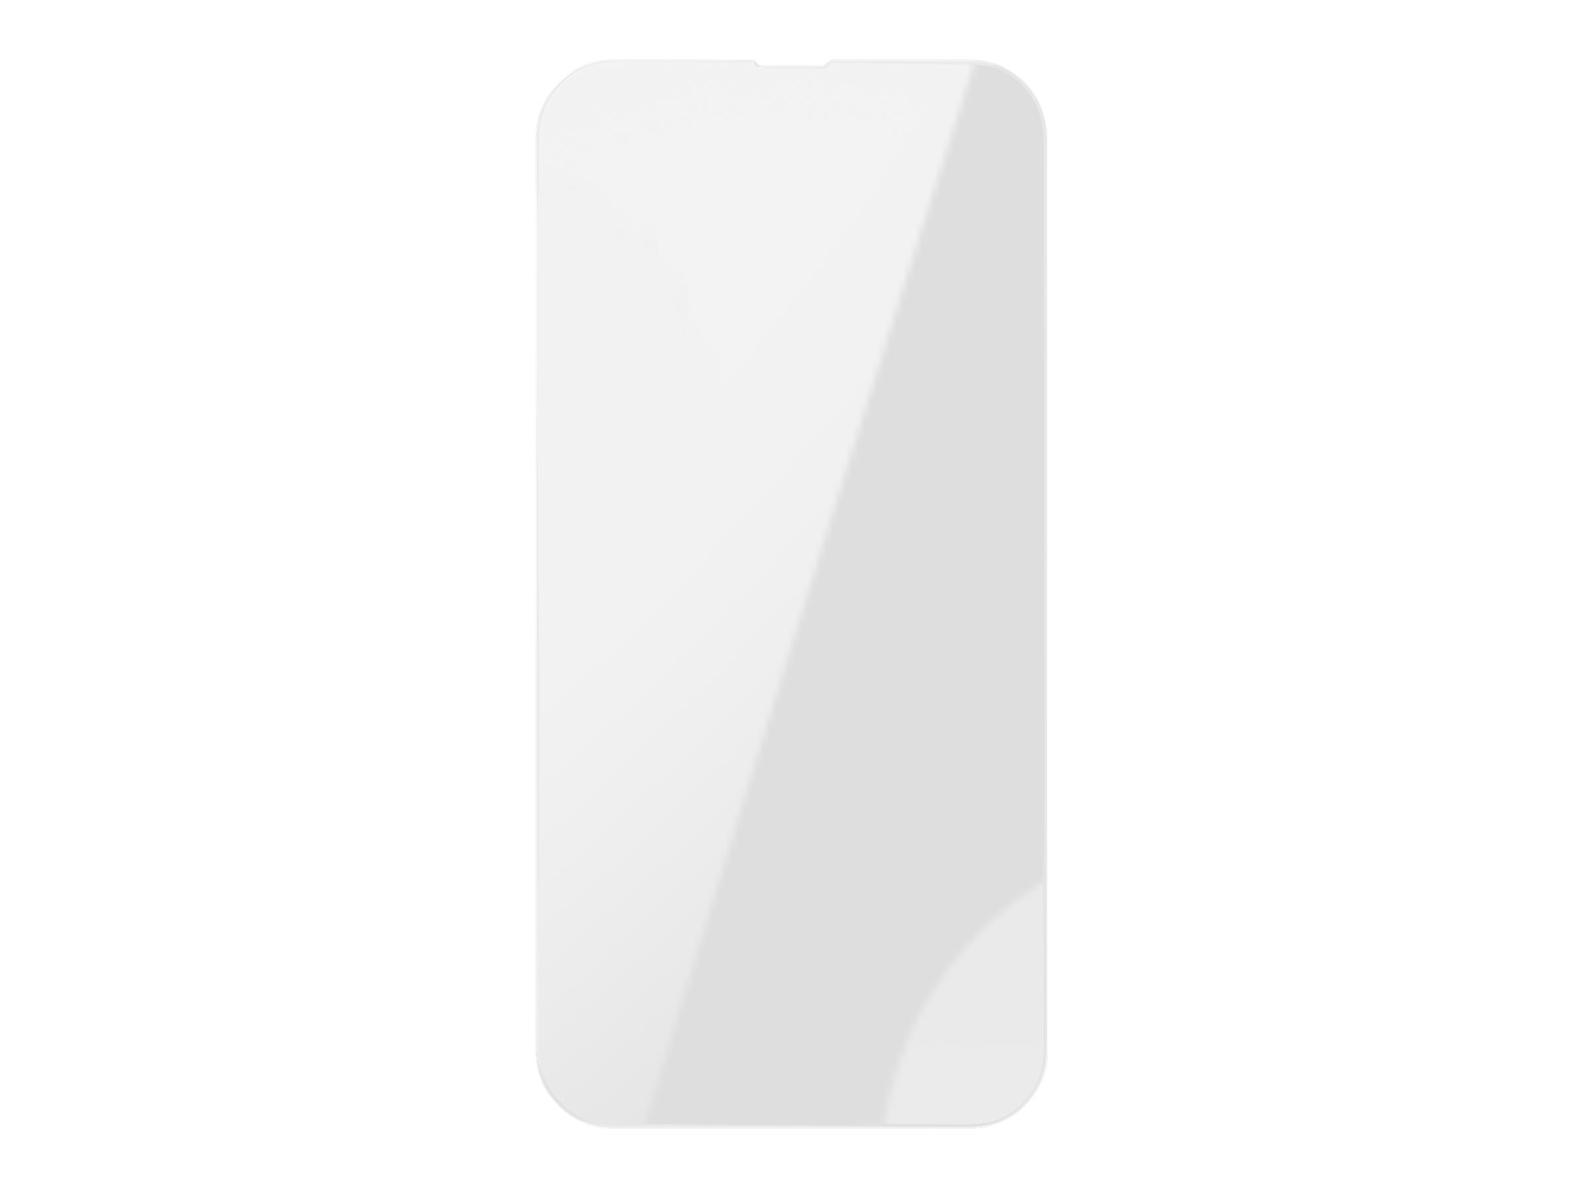 Tilbud: KEY Preikestolen iPhone 13 Pro Max kr 239,2 på Telenor